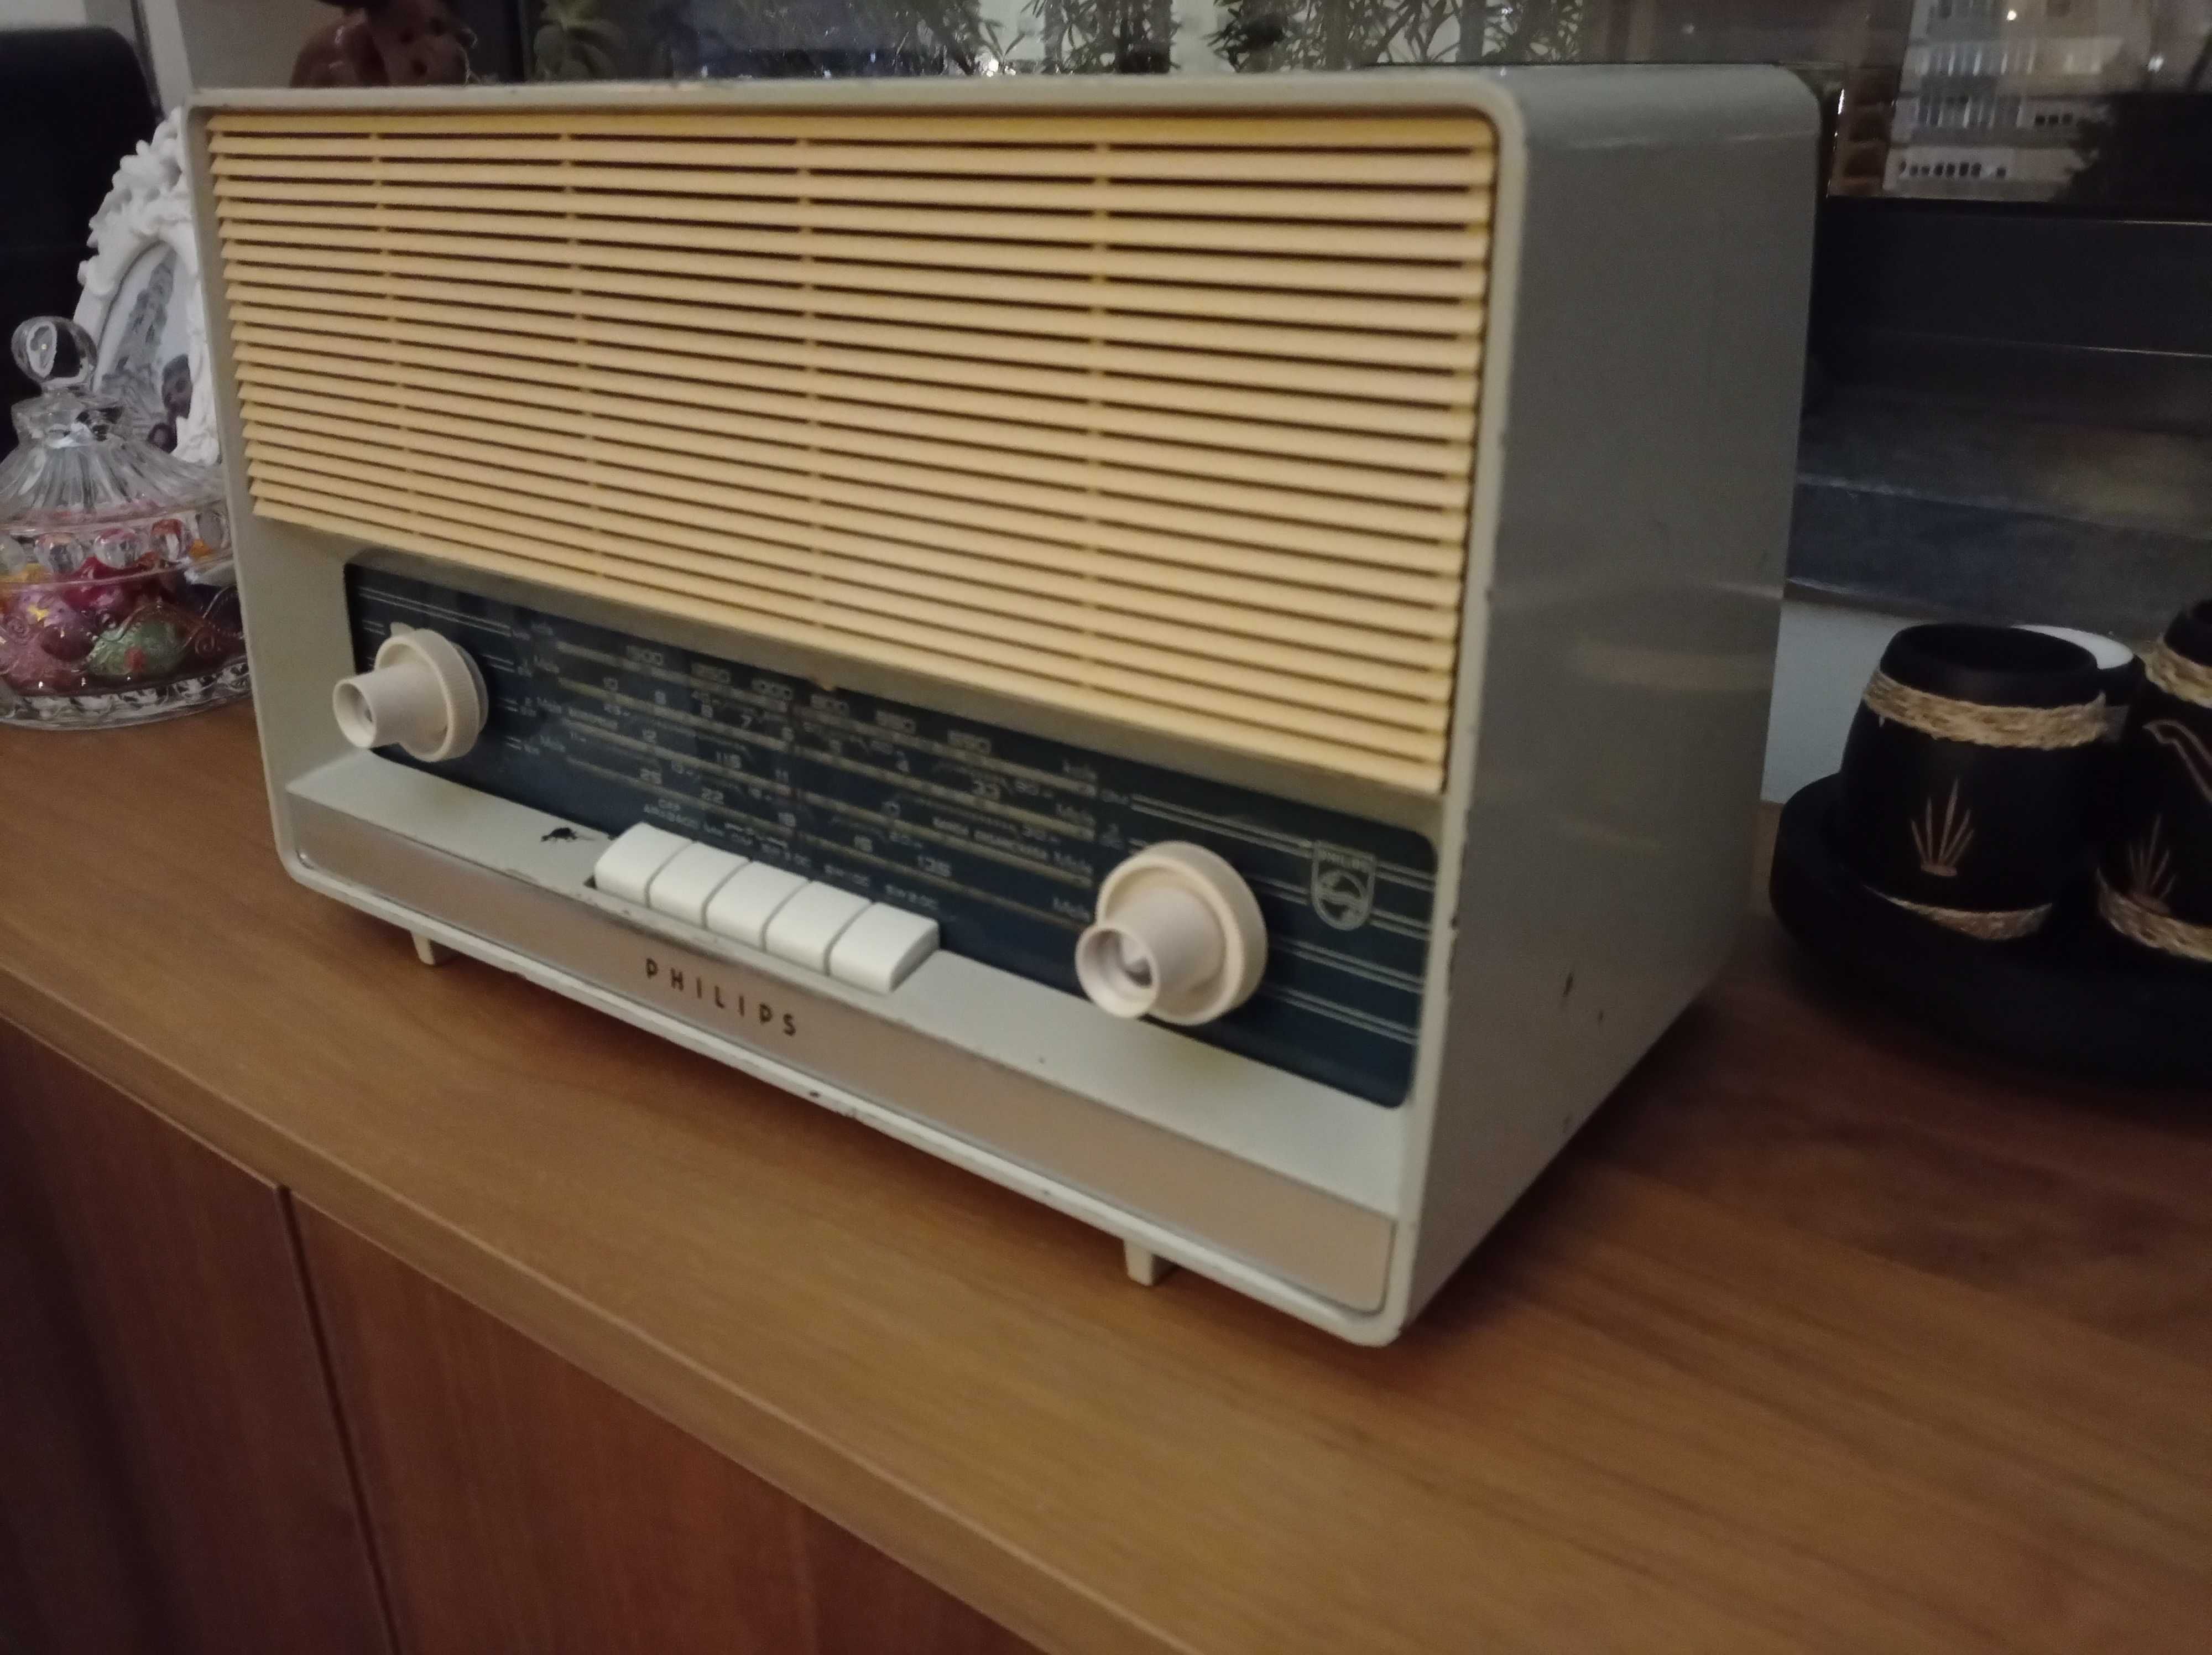 Retro radio Philips B3X16A - rádio válvulas antigo [c/ FM e Bluetooth]